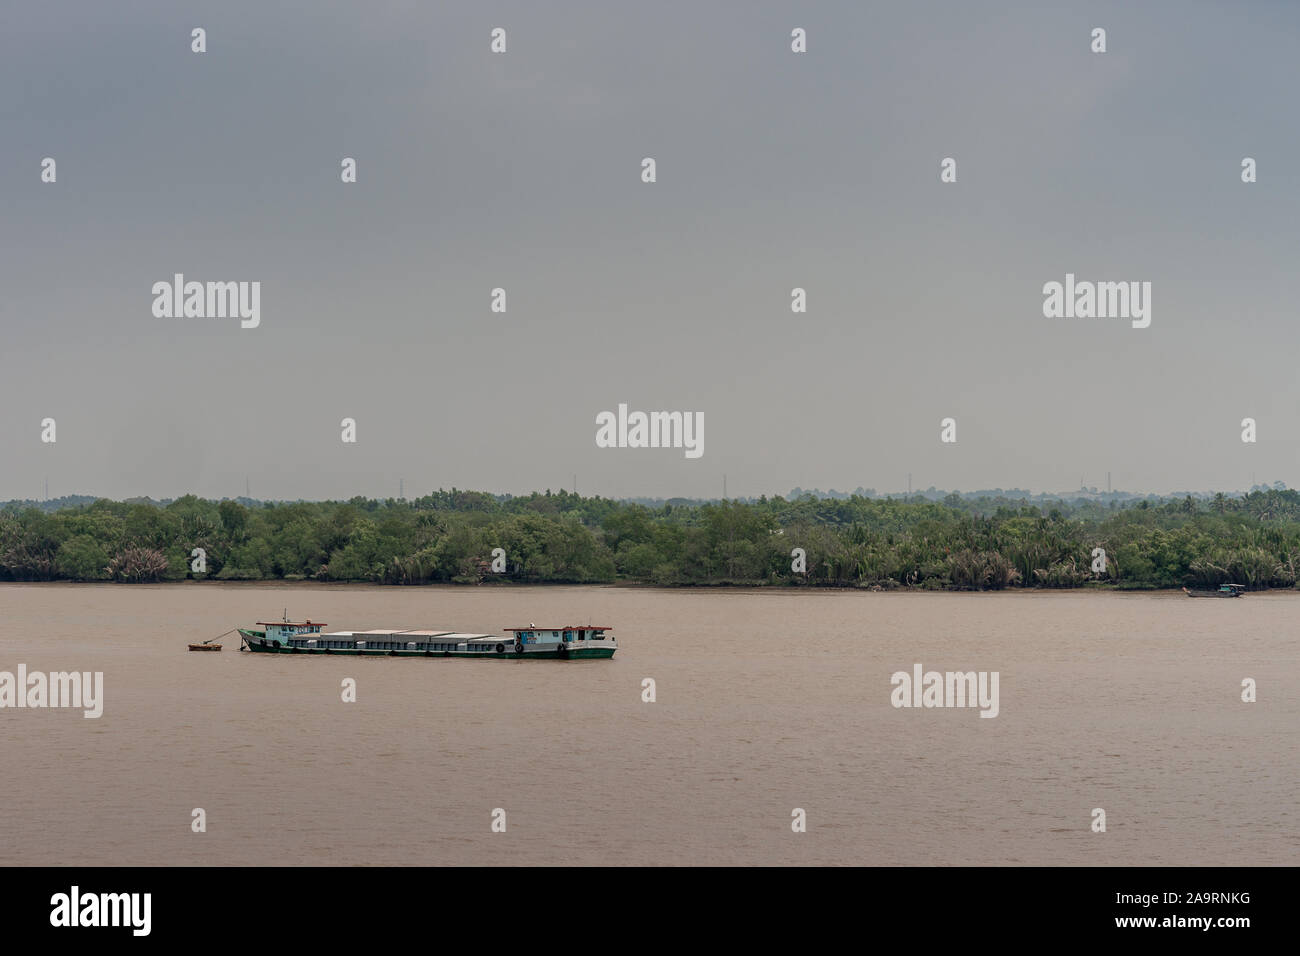 Tau Long River, au Vietnam - 12 mars 2019 : Long River Barge coque segmentée voiles sur l'eau brune et se trouve profondément. Ceinture verte se sépare de ciel bleu... Banque D'Images